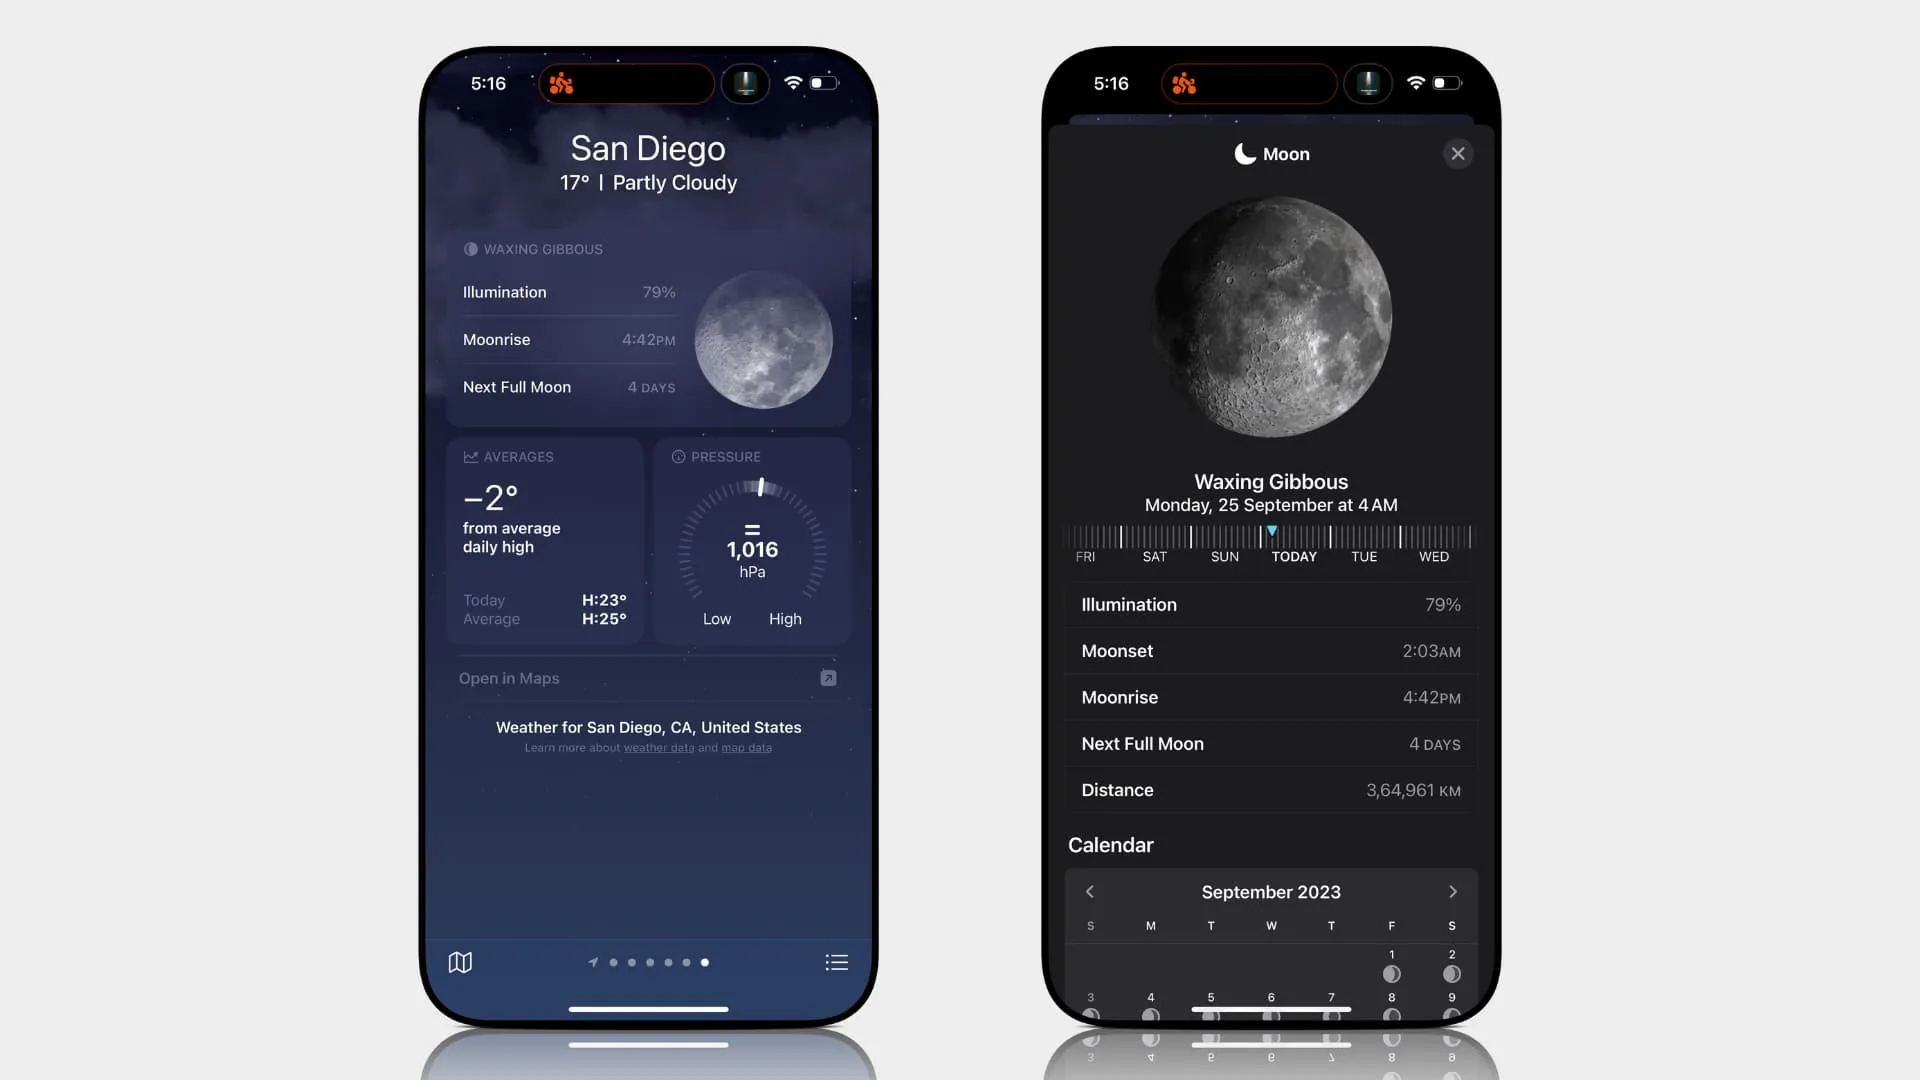 Monddetails in der Wetter-App auf dem iPhone anzeigen